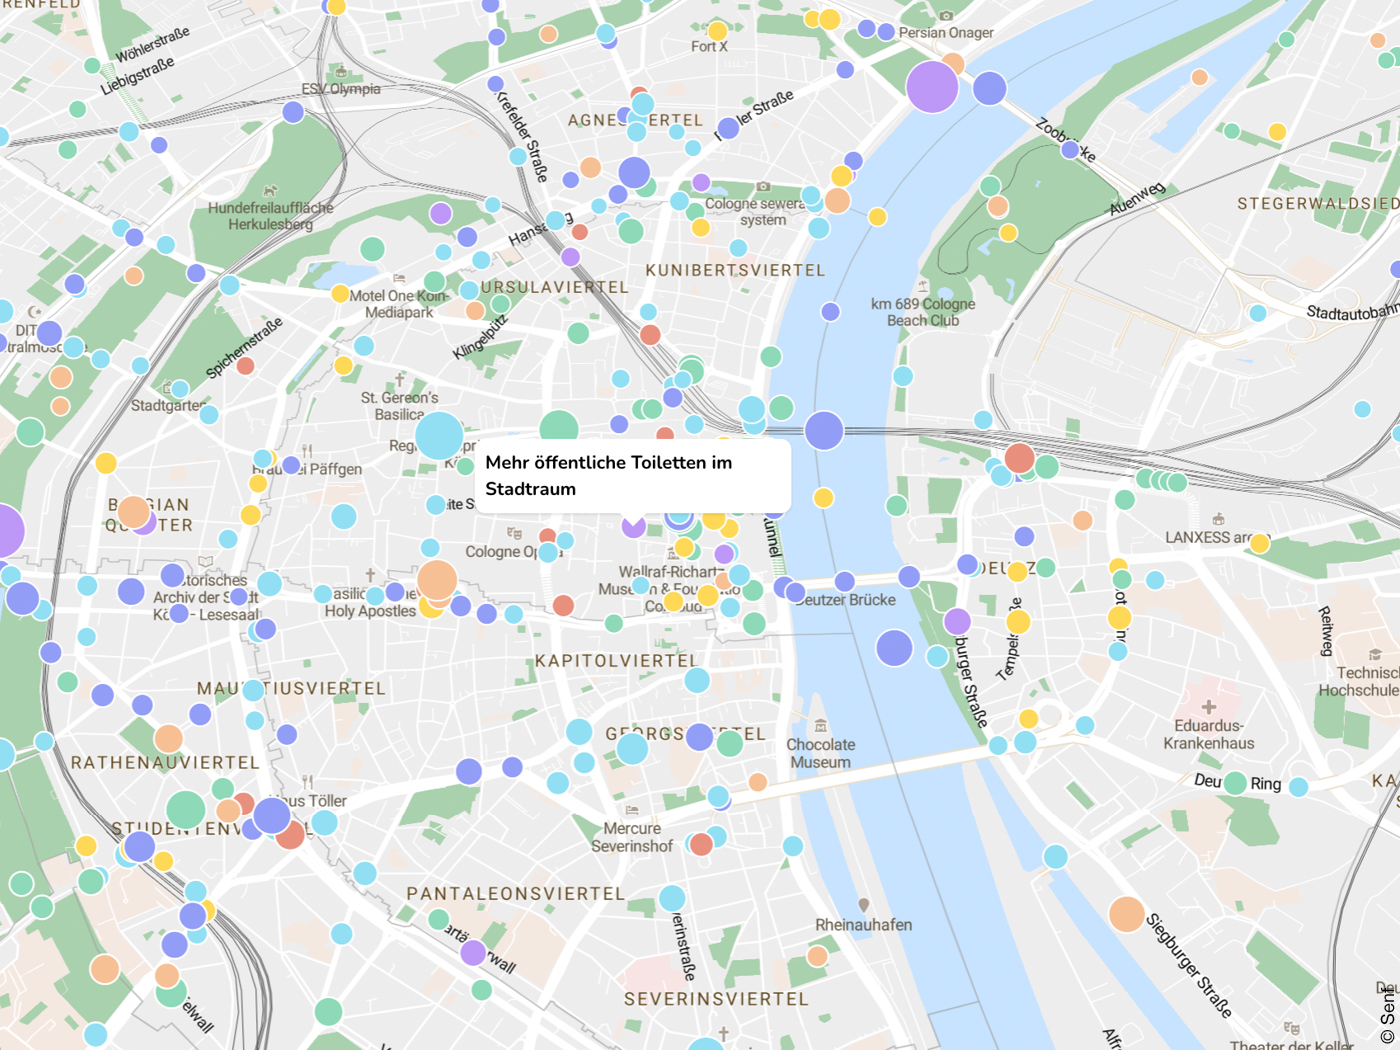 Karte von Köln mit Punkte Punkten darauf